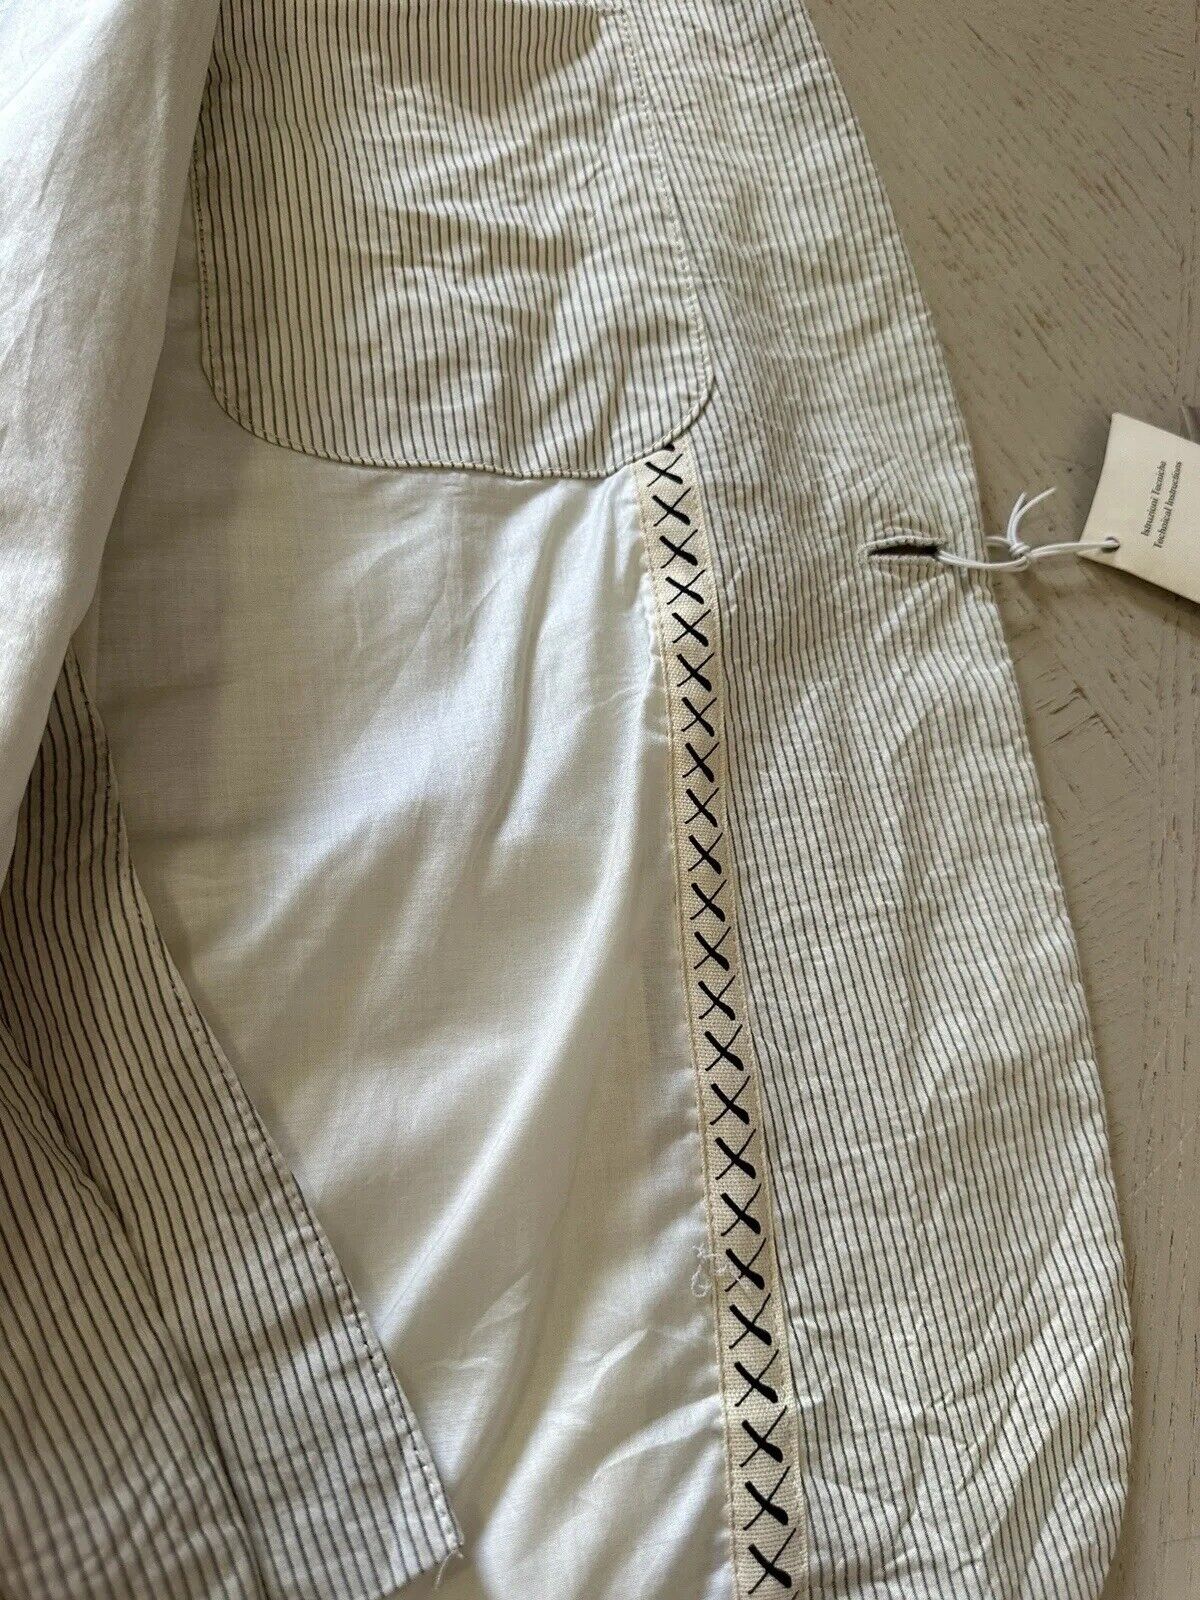 NWT $980 EXTE Men’s Sport Coat Jacket Blazer Off White Striped 40 US/50 Eu Italy